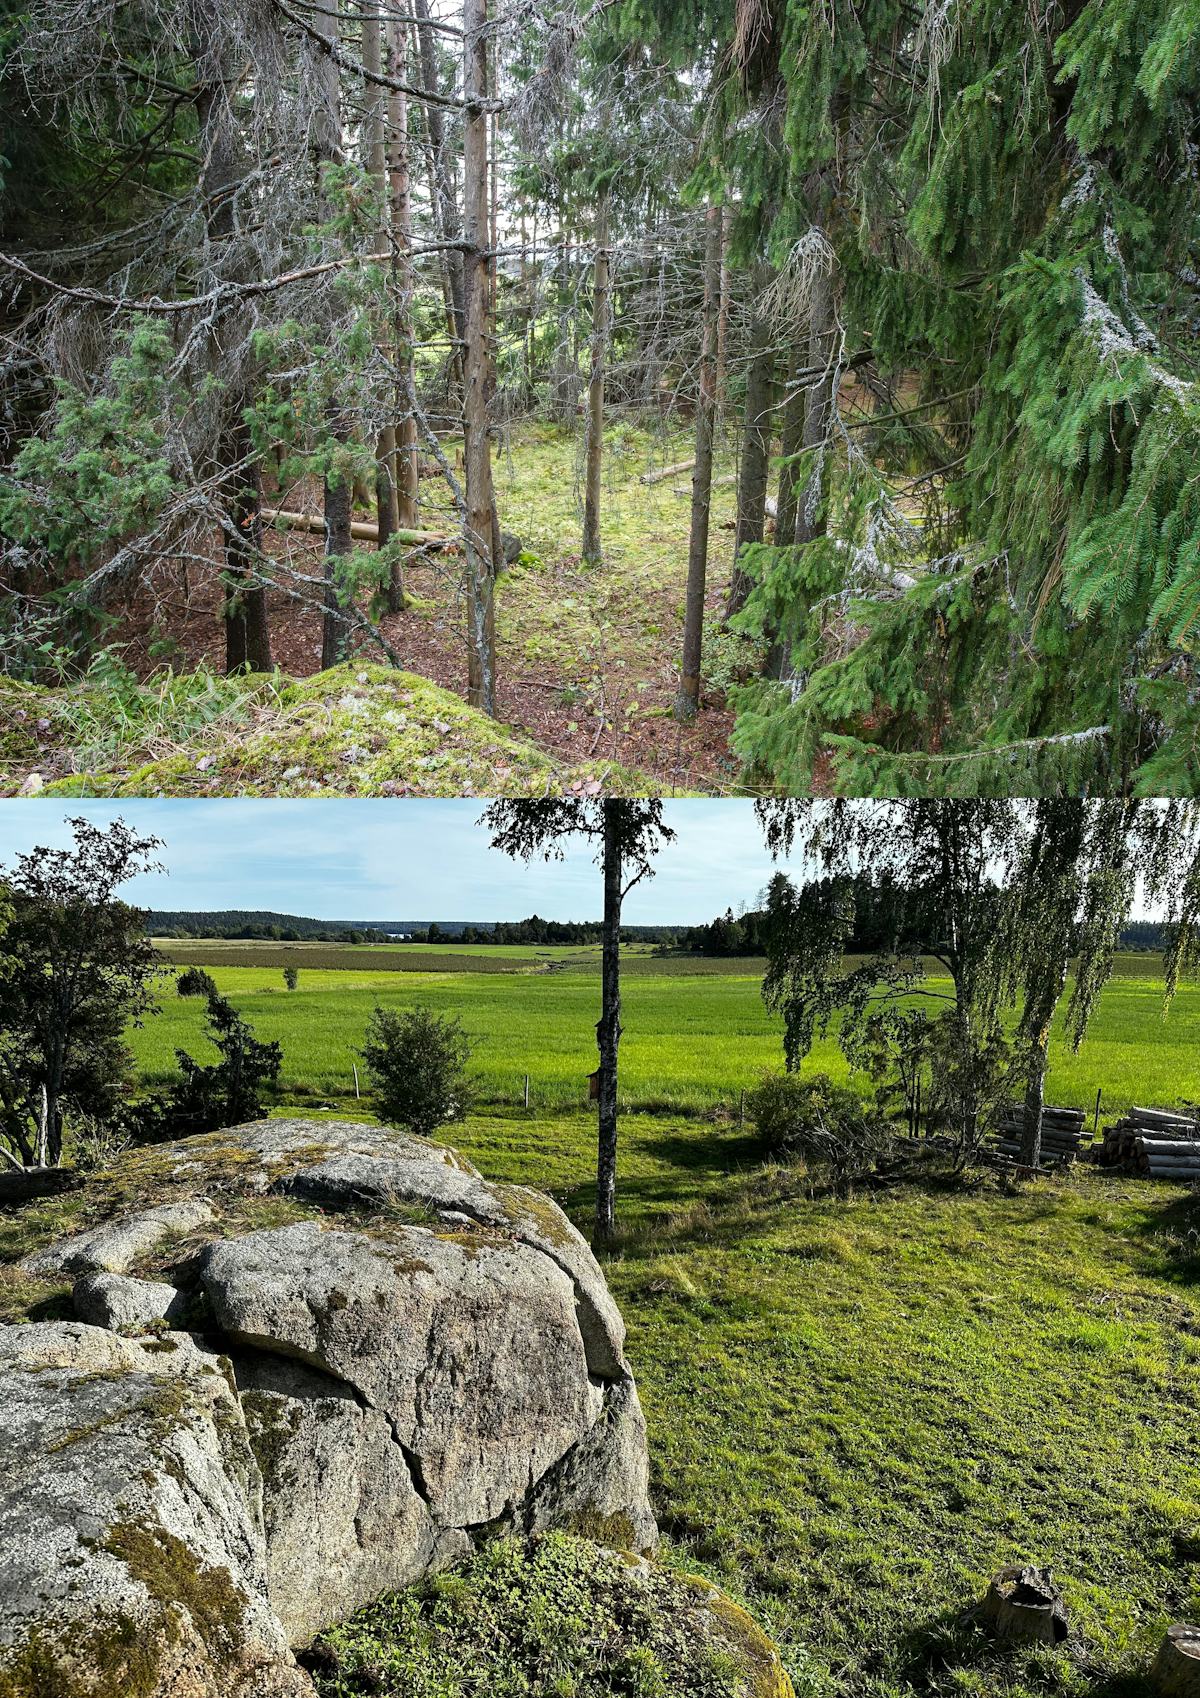 Ett collage av två utomhusscener: den översta bilden visar en tät vintergrön skogsstig och den nedersta bilden visar ett öppet gräslandskap med ett stenblock och träd i förgrunden.